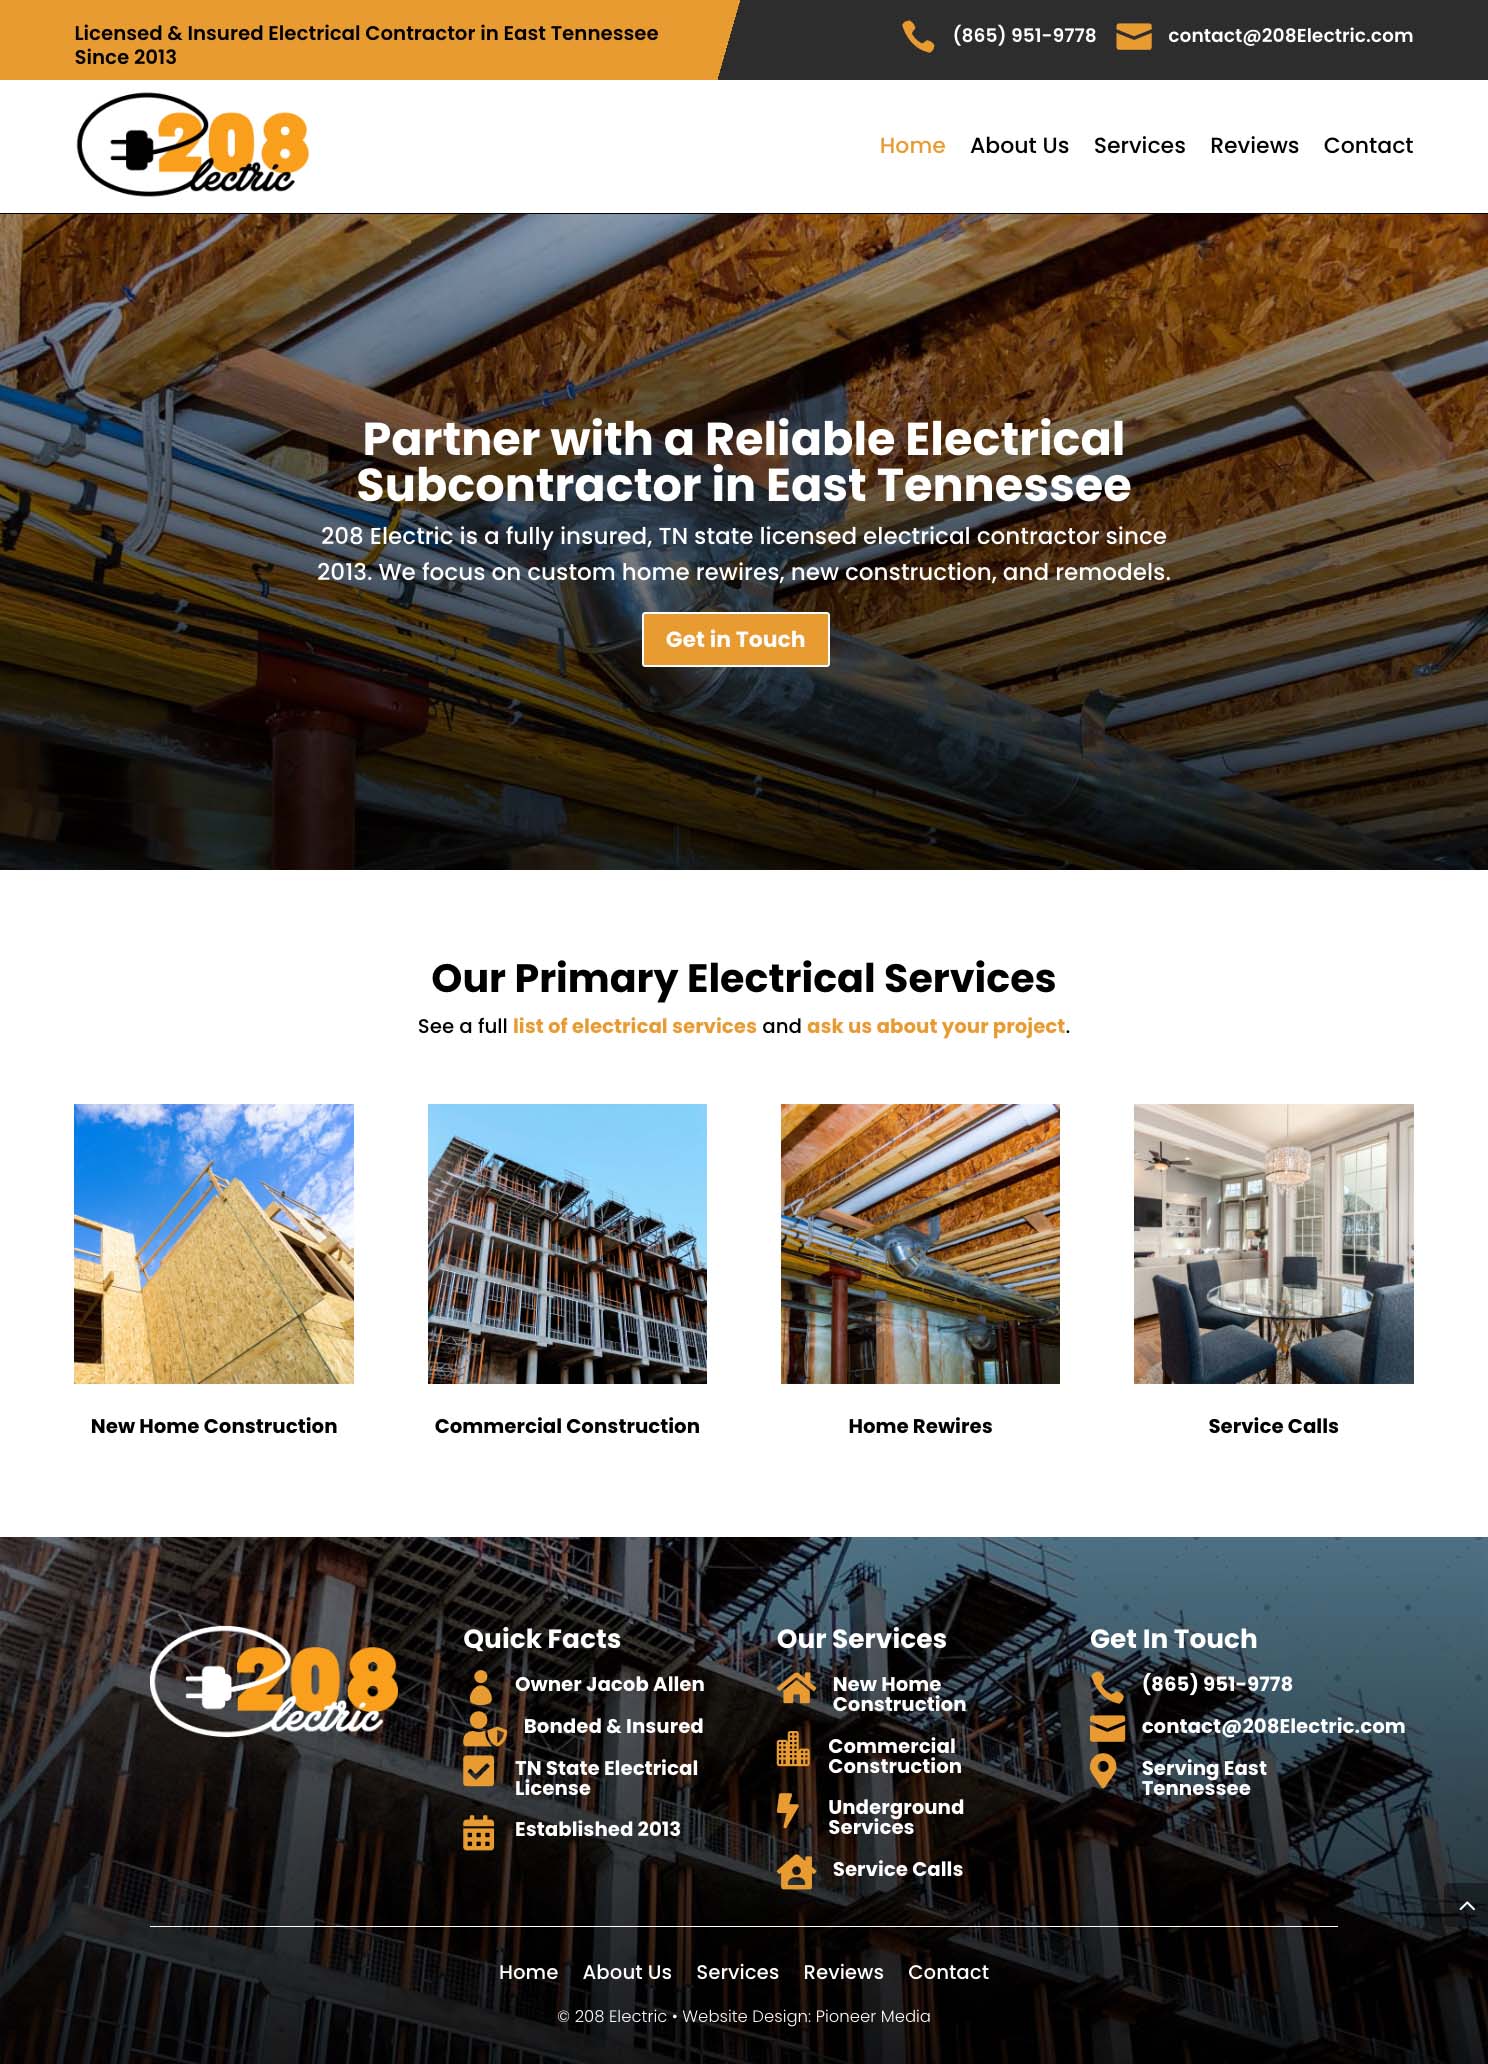 208 Electric Homepage Screenshot